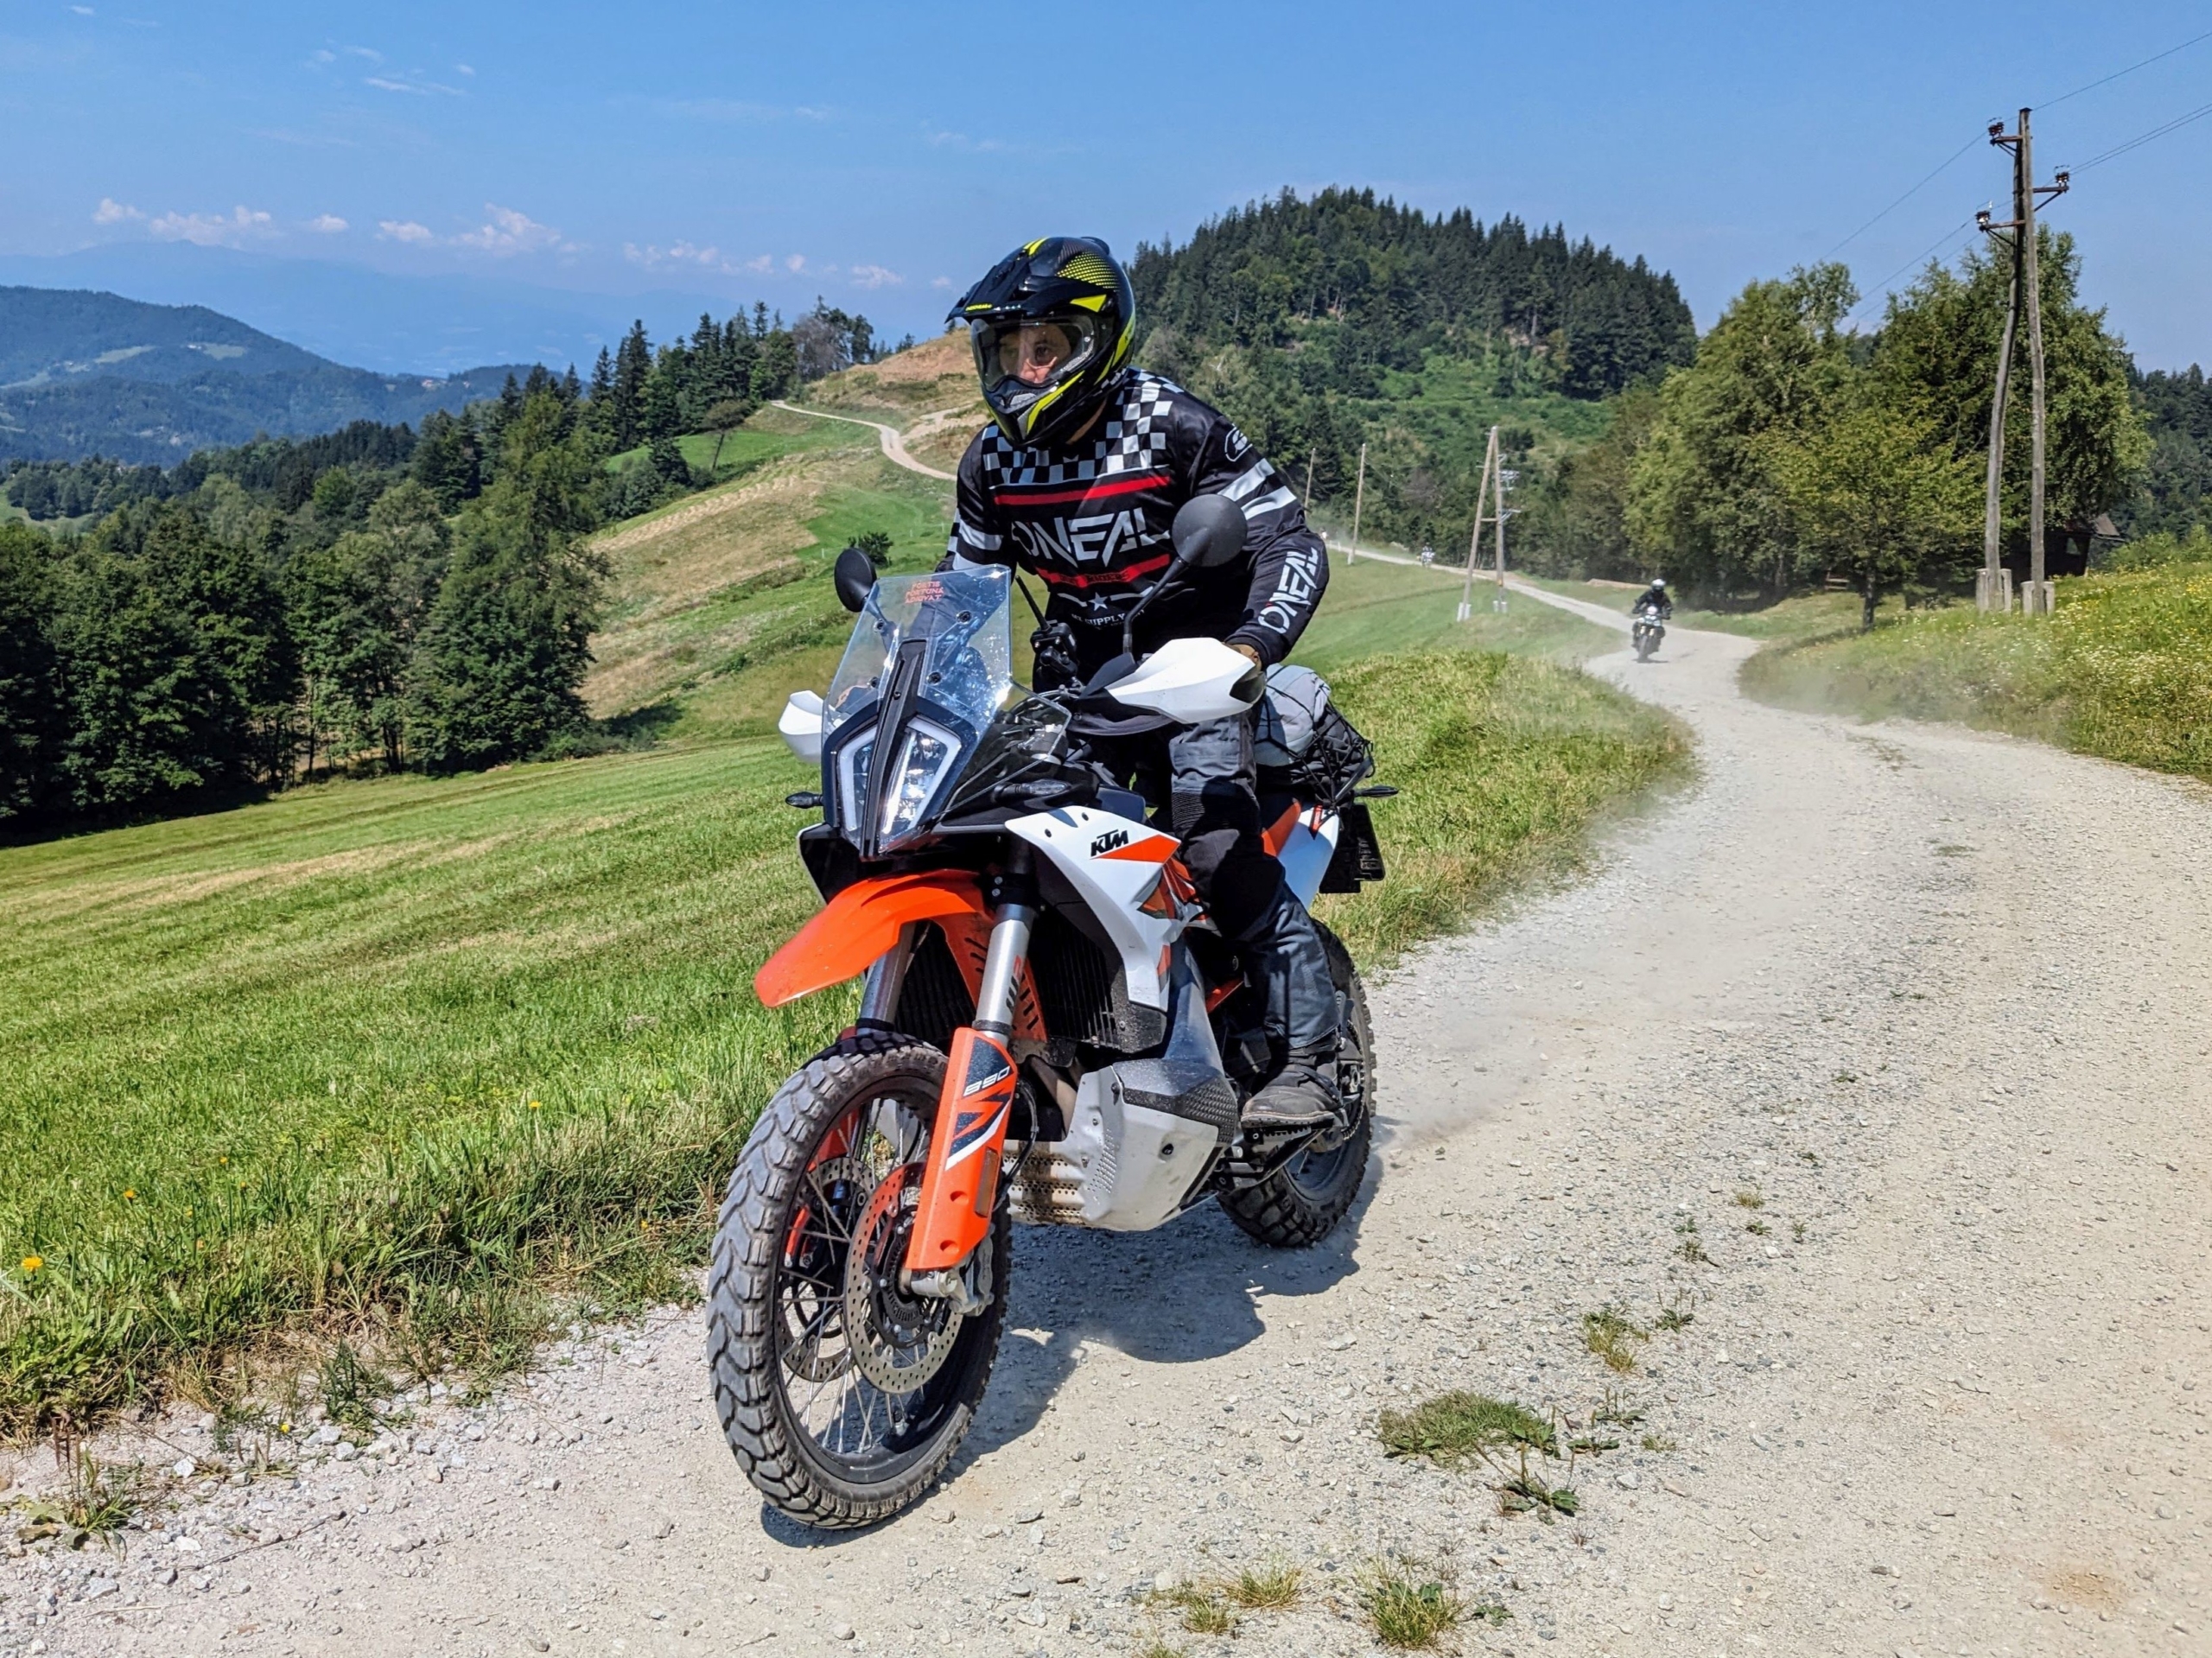 Jentlflow Adventurebike Offroad Fahrtechnik Training – perfekt vorbereitet am Start